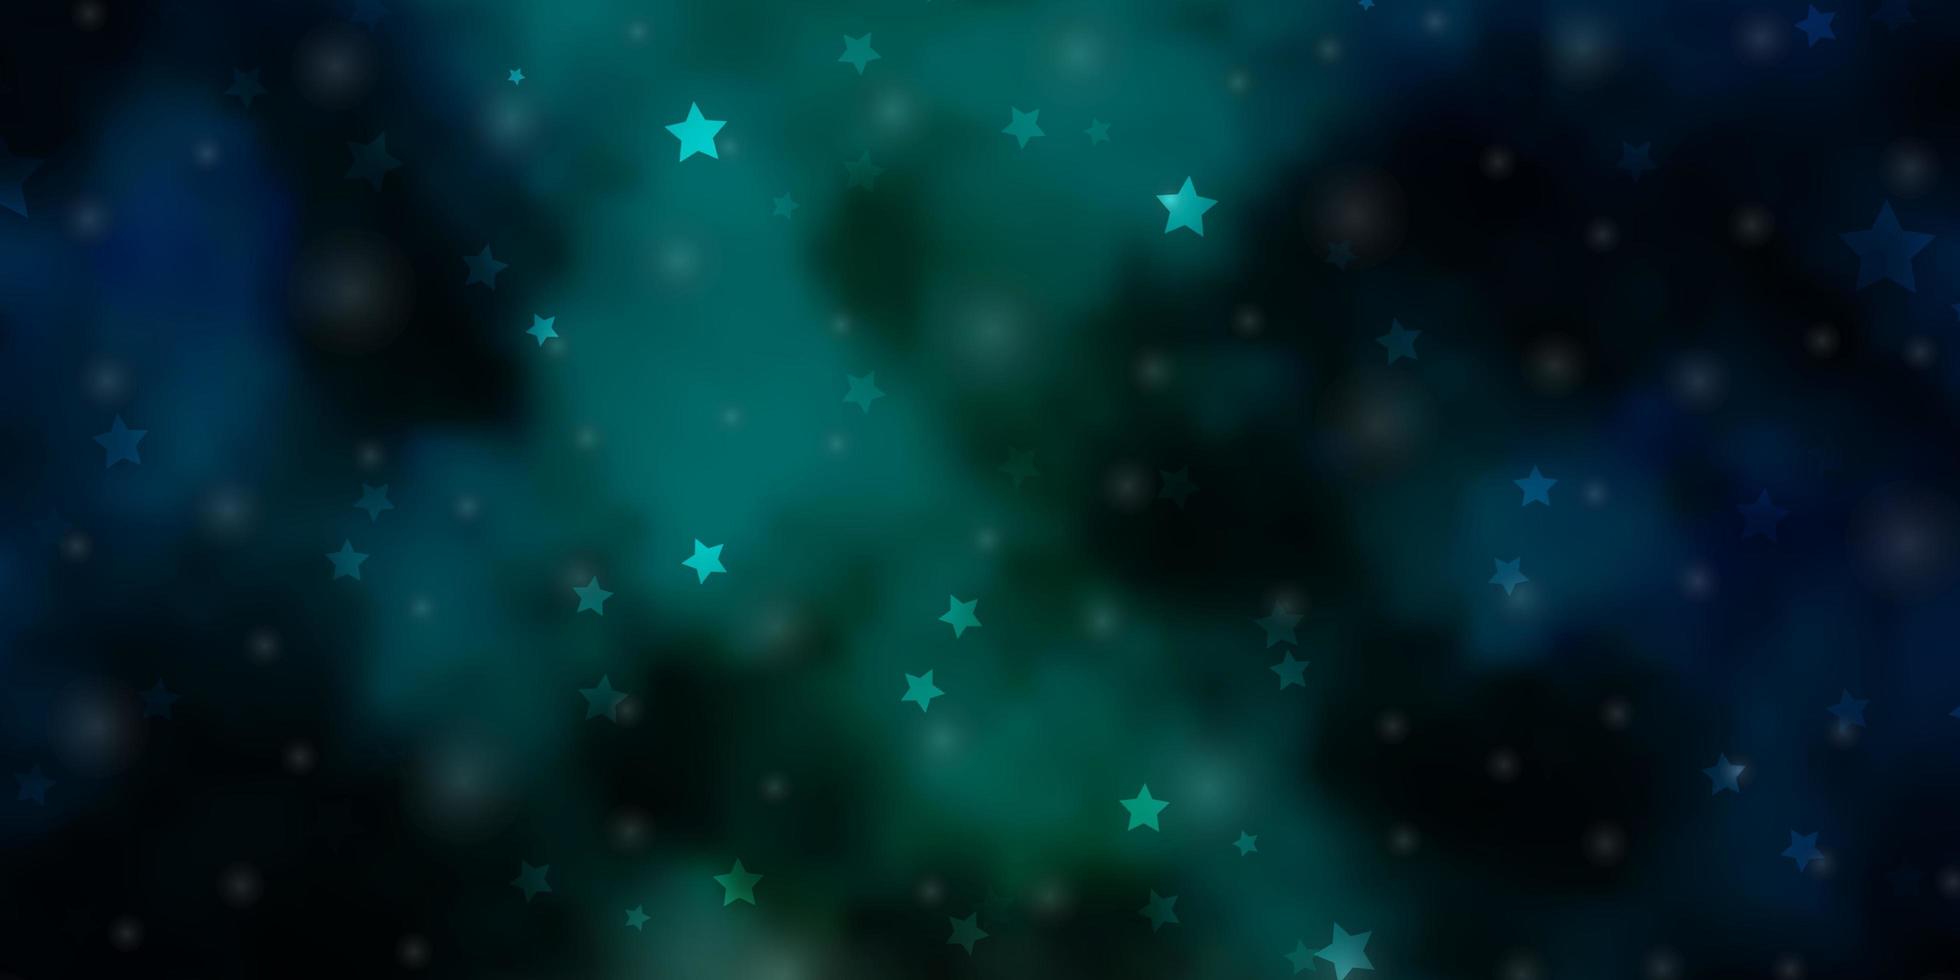 lichtblauw, groen vectormalplaatje met neonsterren. vervagen decoratief ontwerp in eenvoudige stijl met sterren. patroon voor nieuwjaarsadvertentie, boekjes. vector